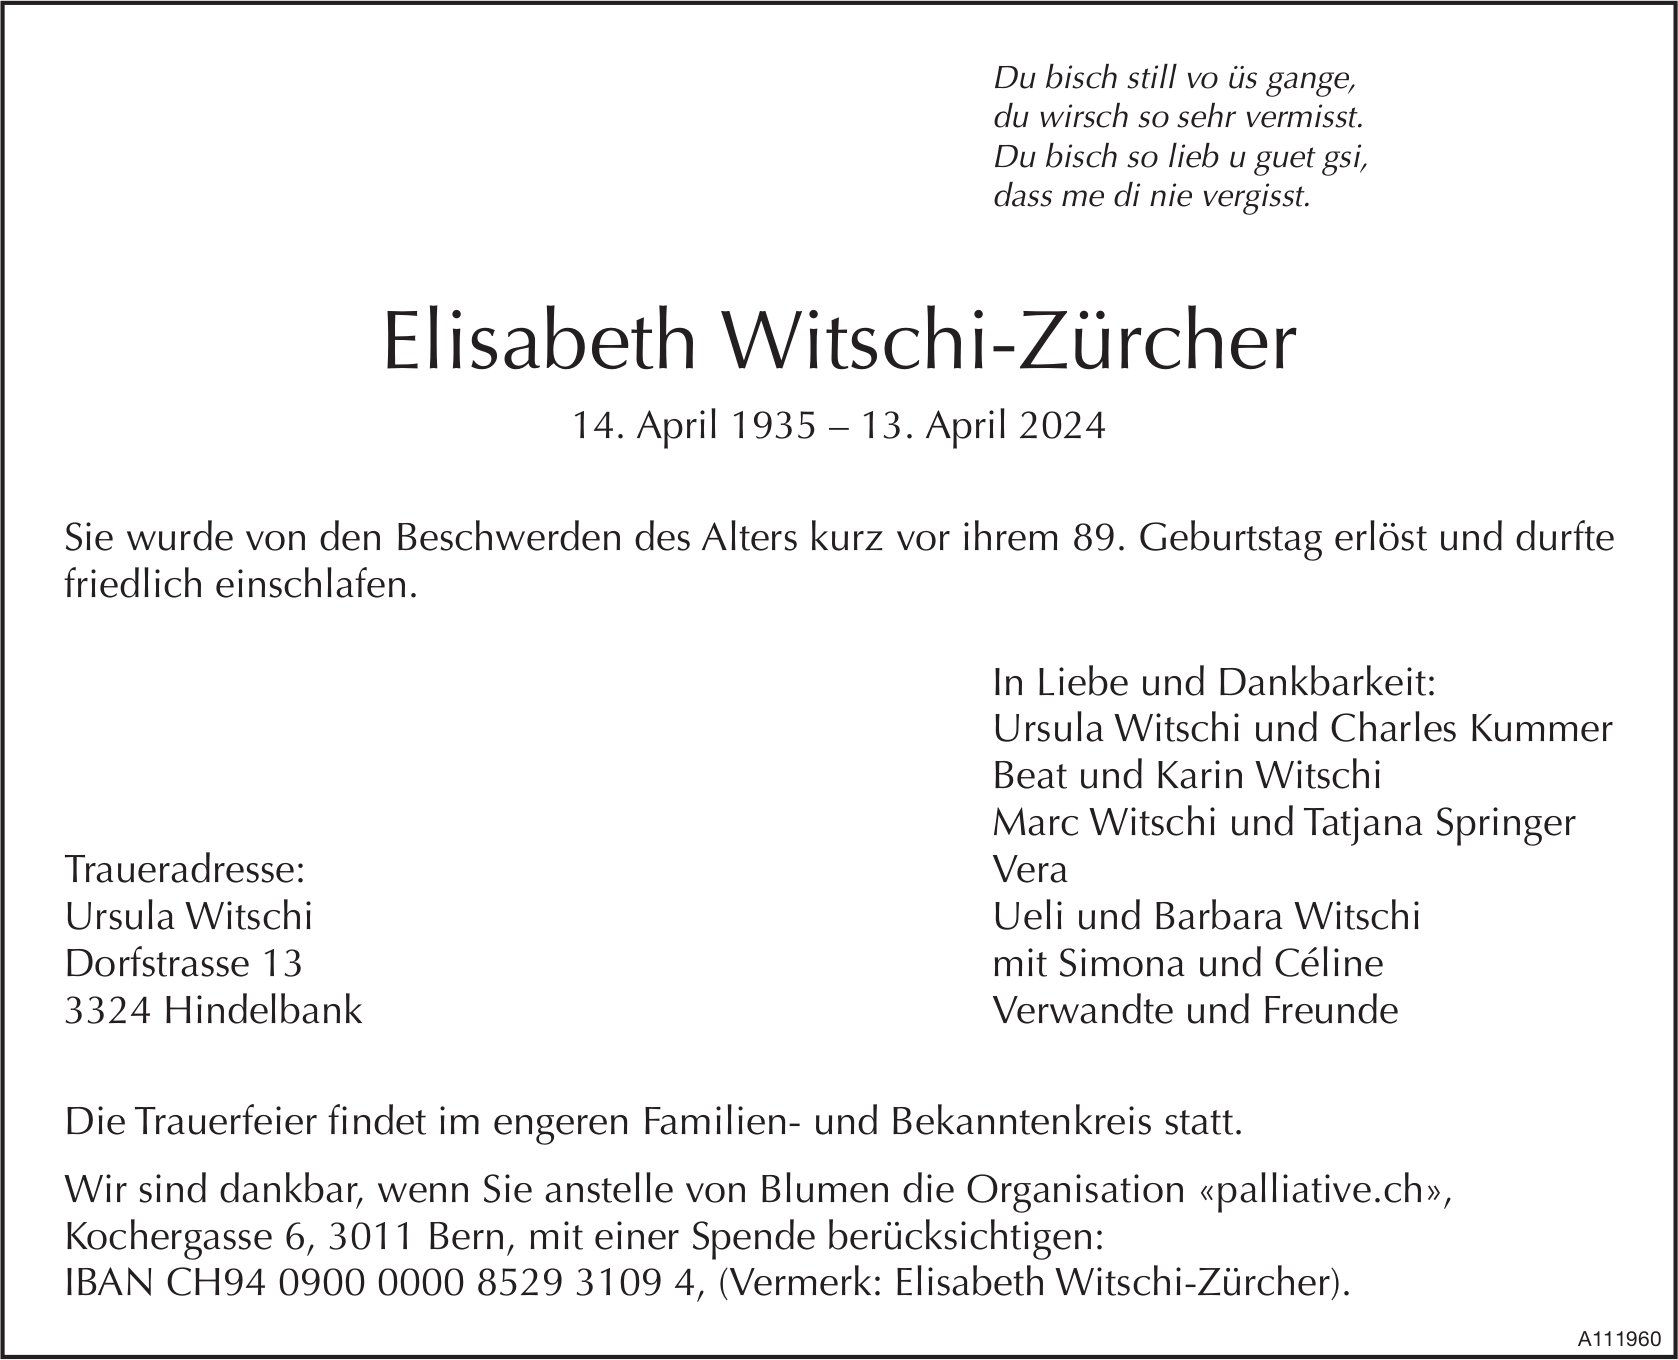 Elisabeth Witschi-Zürcher, April 2024 / TA